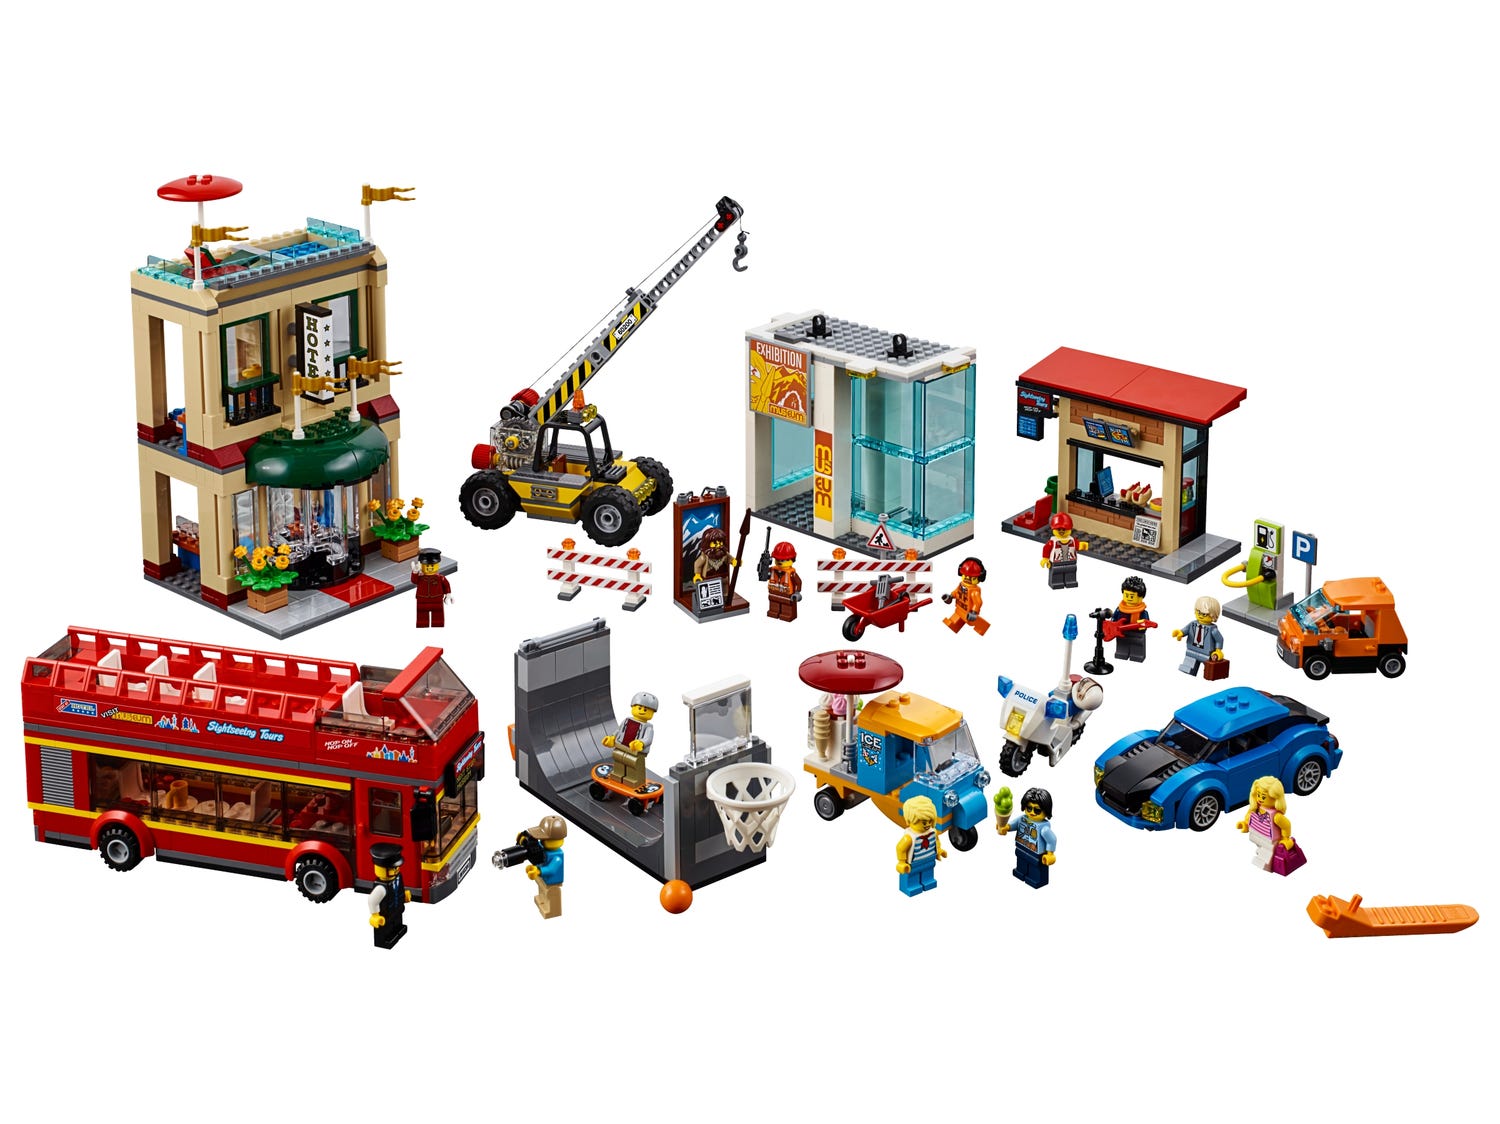 Gran capital 60200 | | Oficial LEGO®